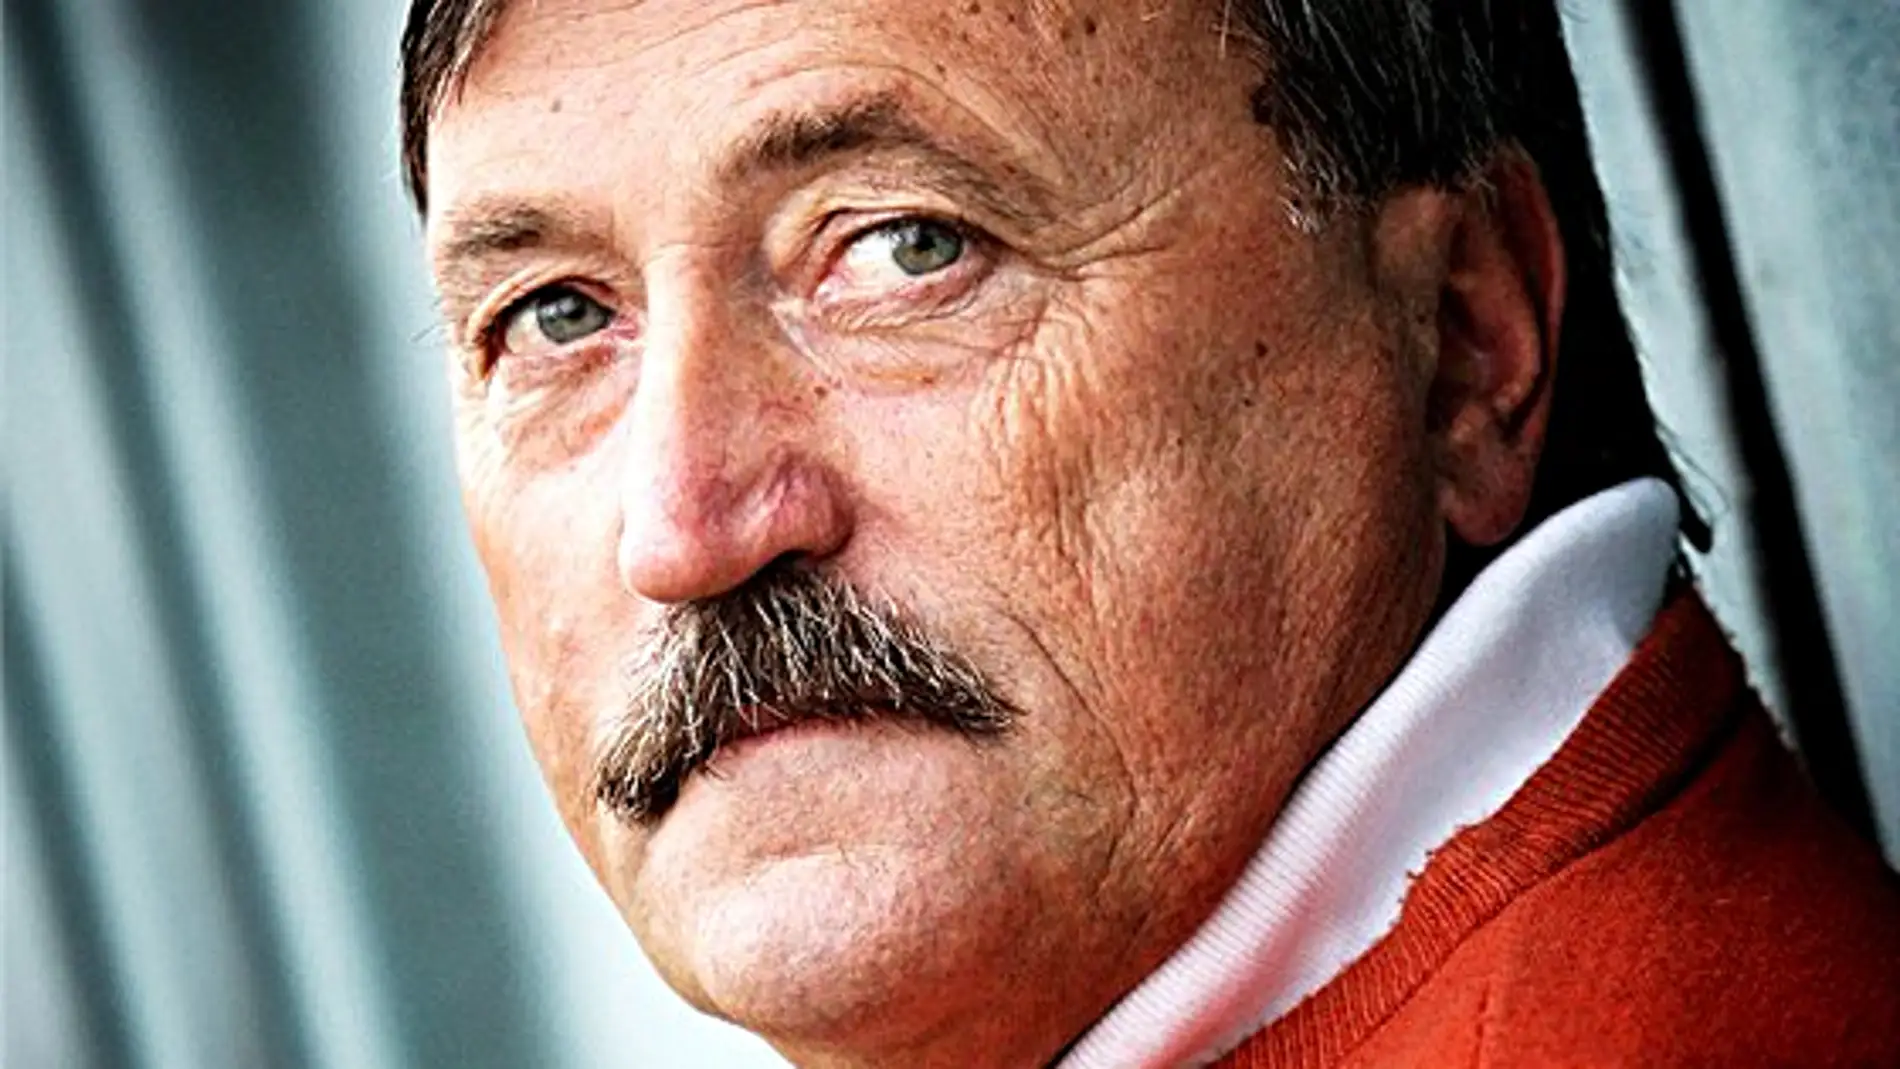 Antonín Panenka, hospitalizado en la UCI en estado grave en Praga por el coronavirus